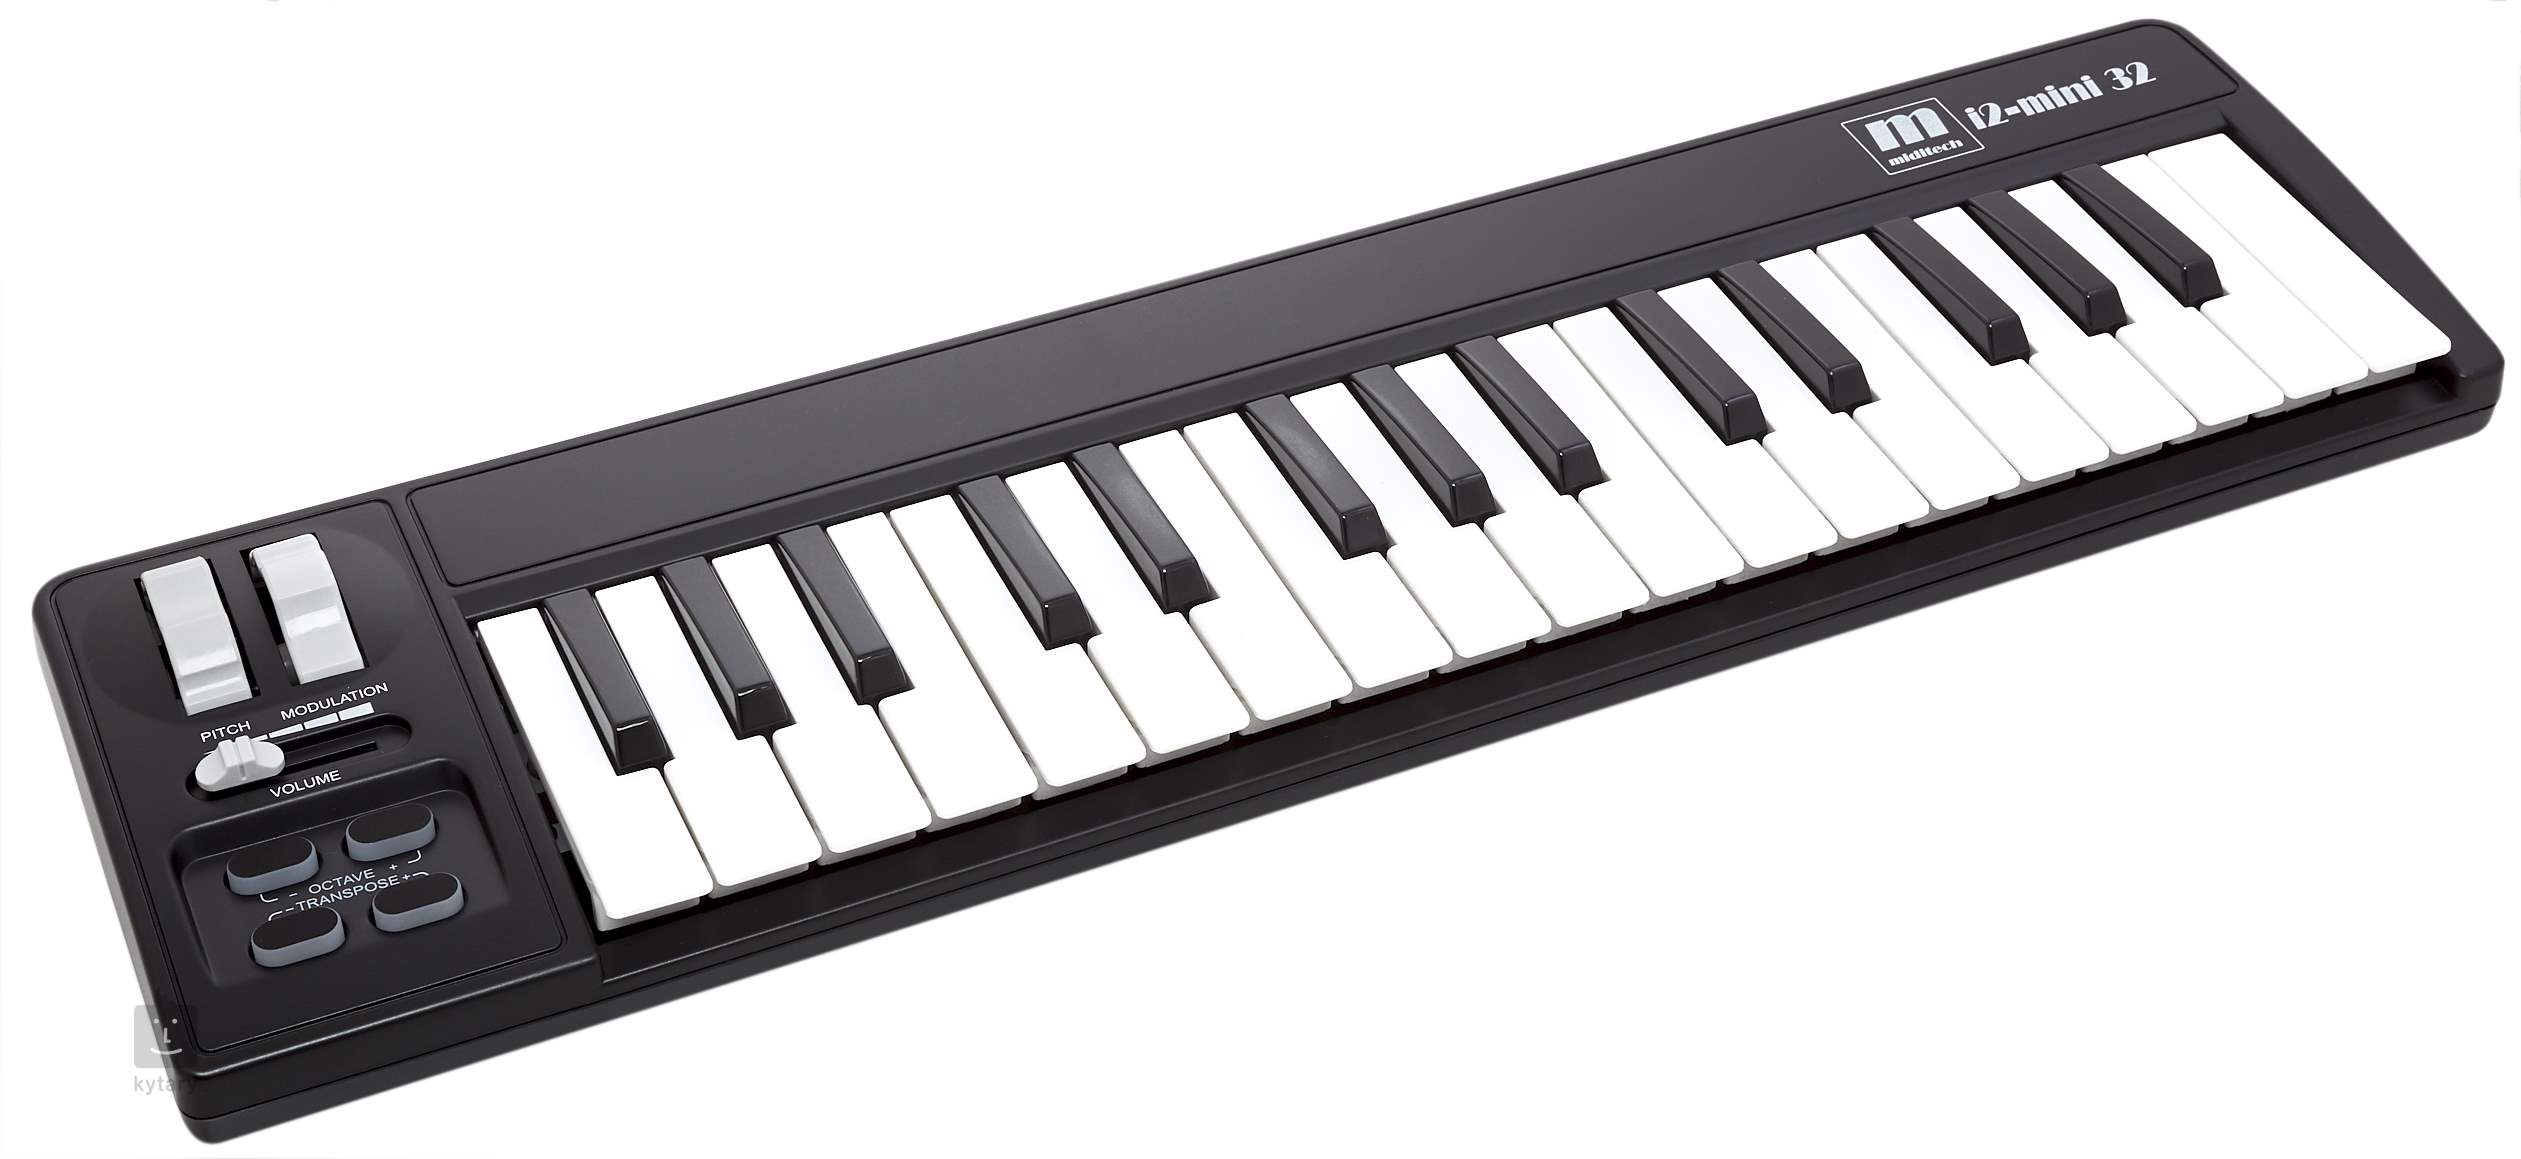 Miditech i2-mini 32 MIDI Keyboard Controller